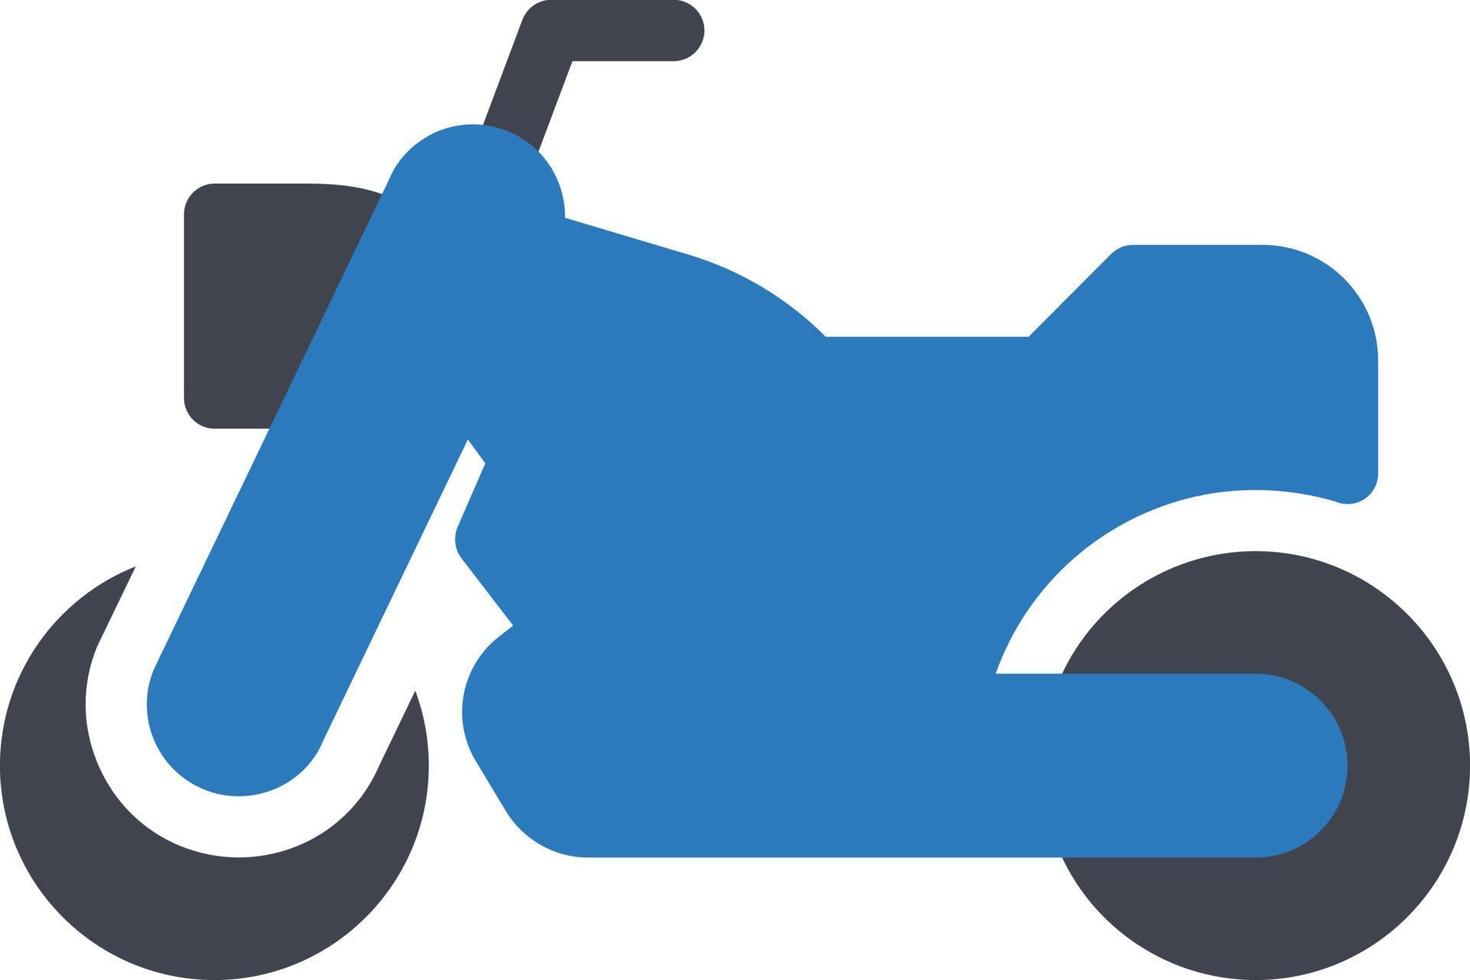 illustration vectorielle de moto sur fond.symboles de qualité premium.icônes vectorielles pour le concept et la conception graphique. vecteur